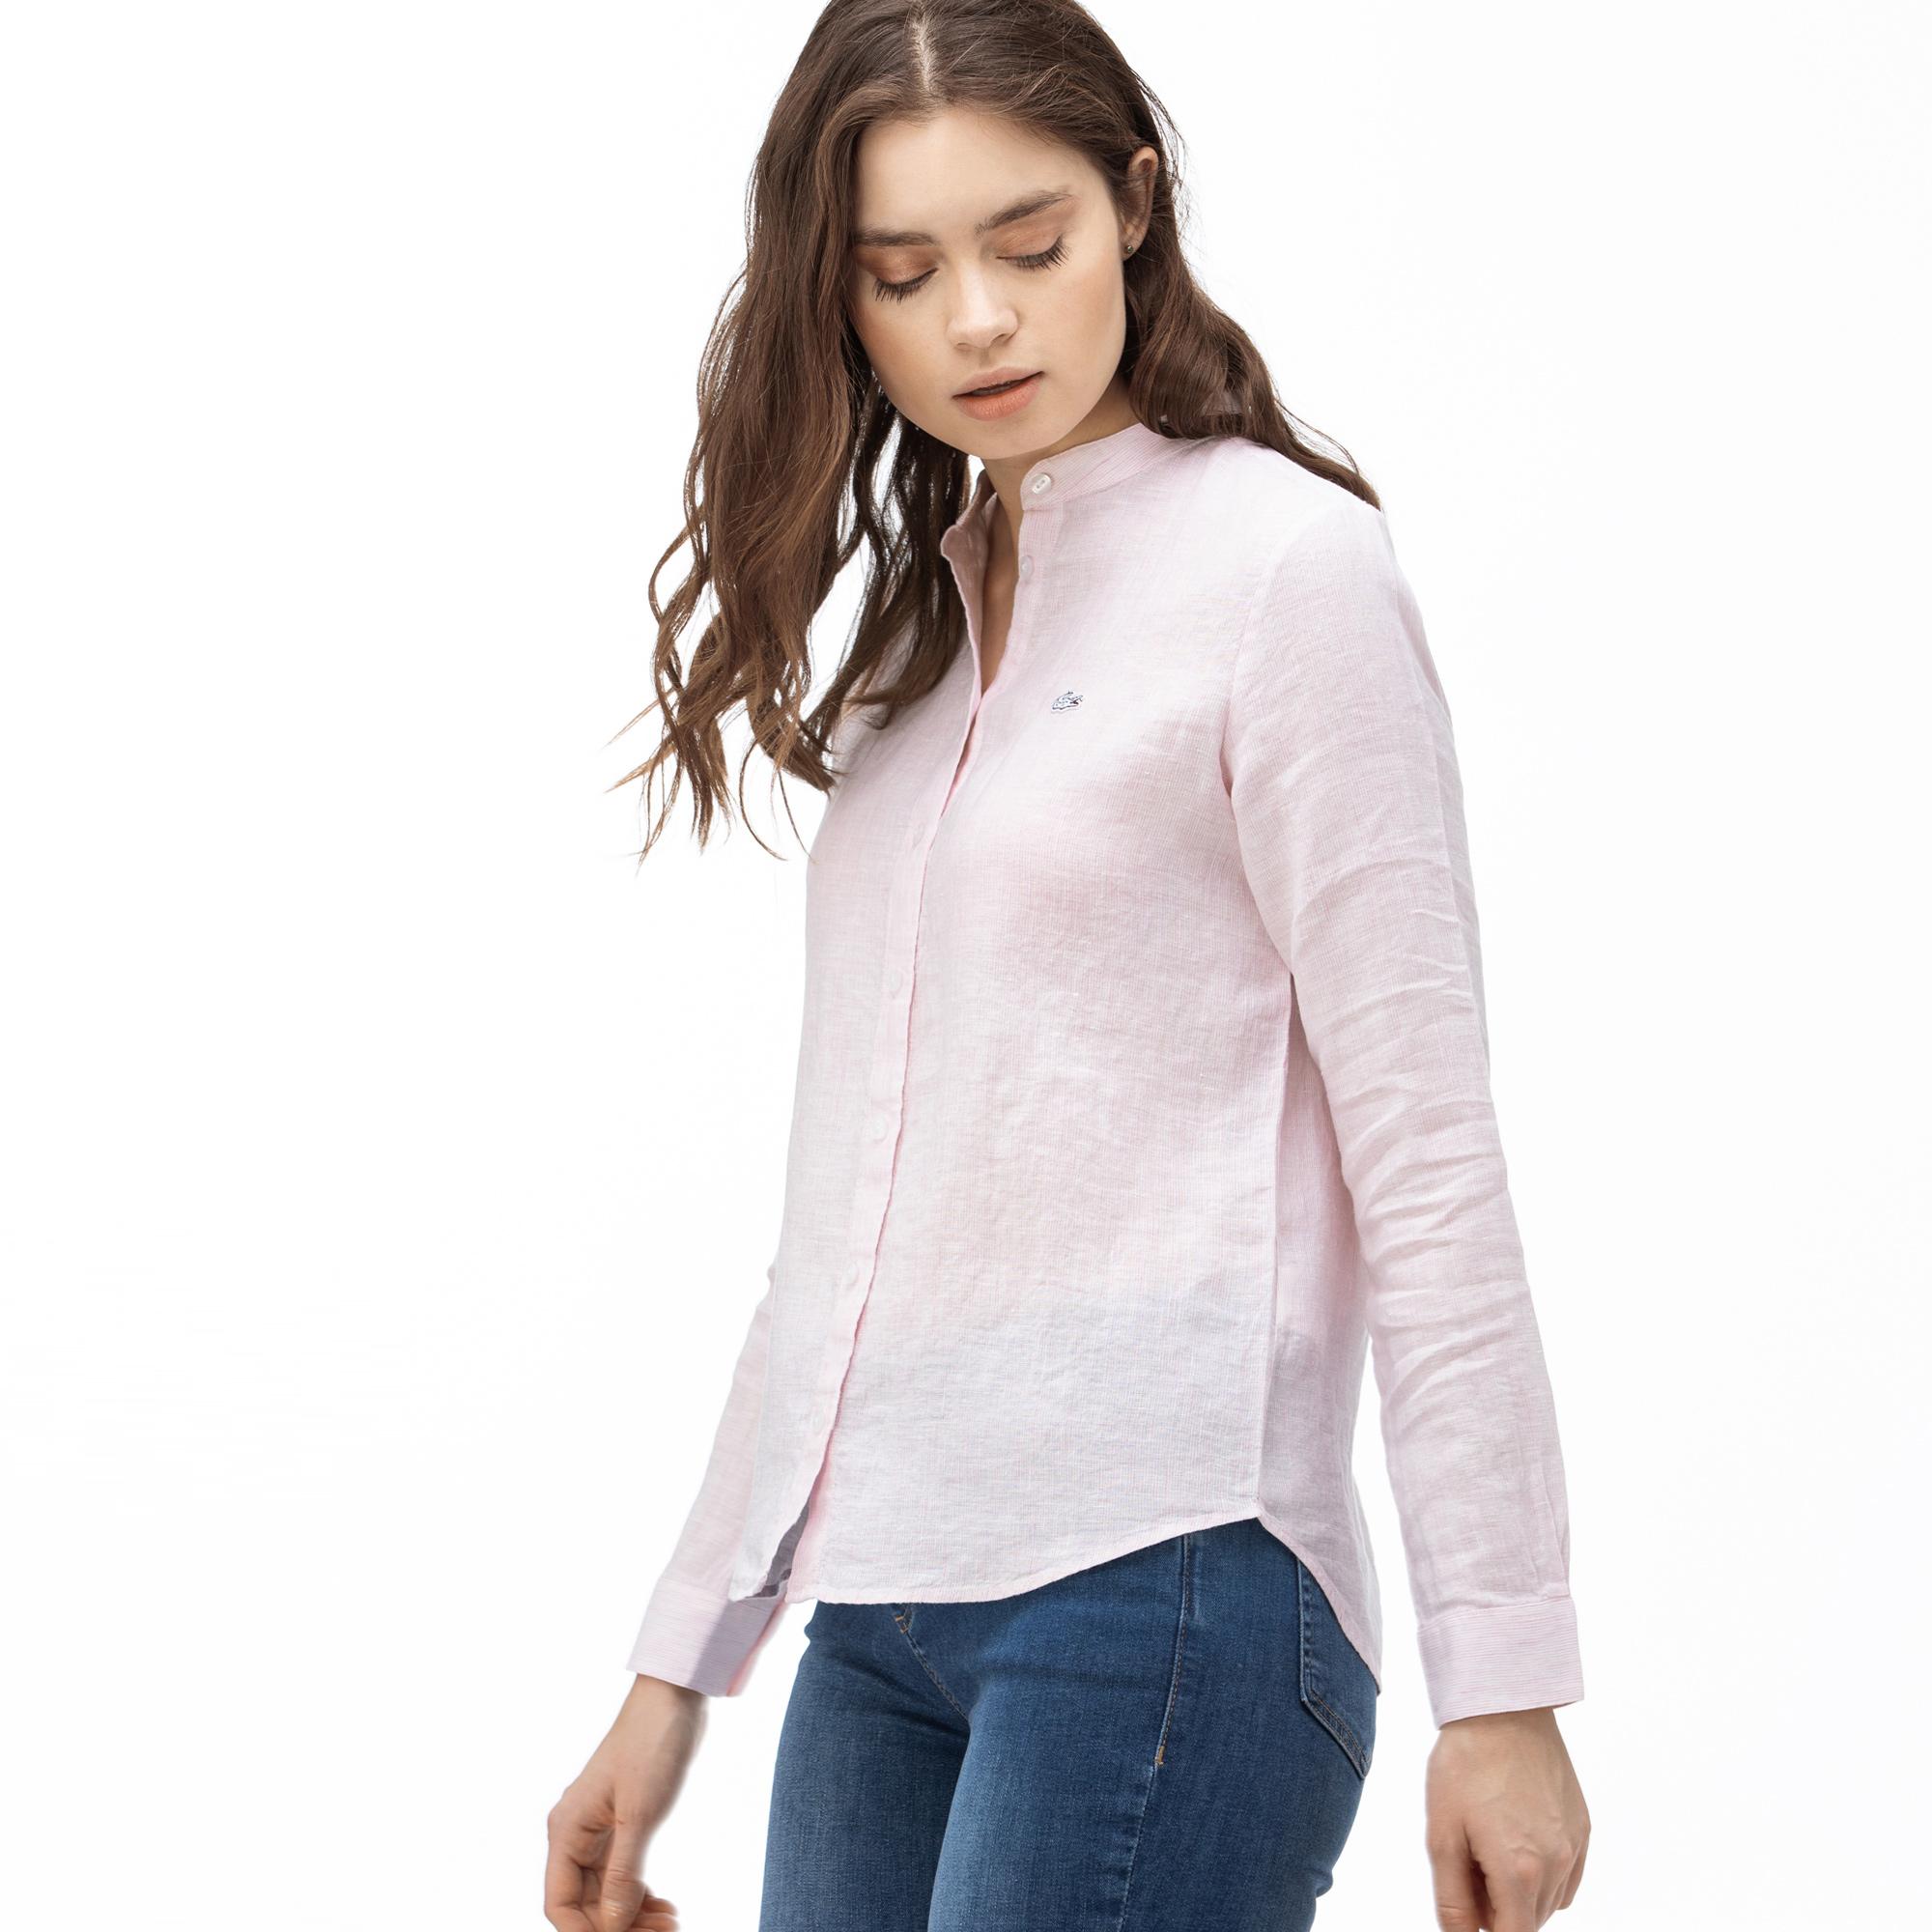 Lacoste Women's Stand-Up Collar Linen Shirt